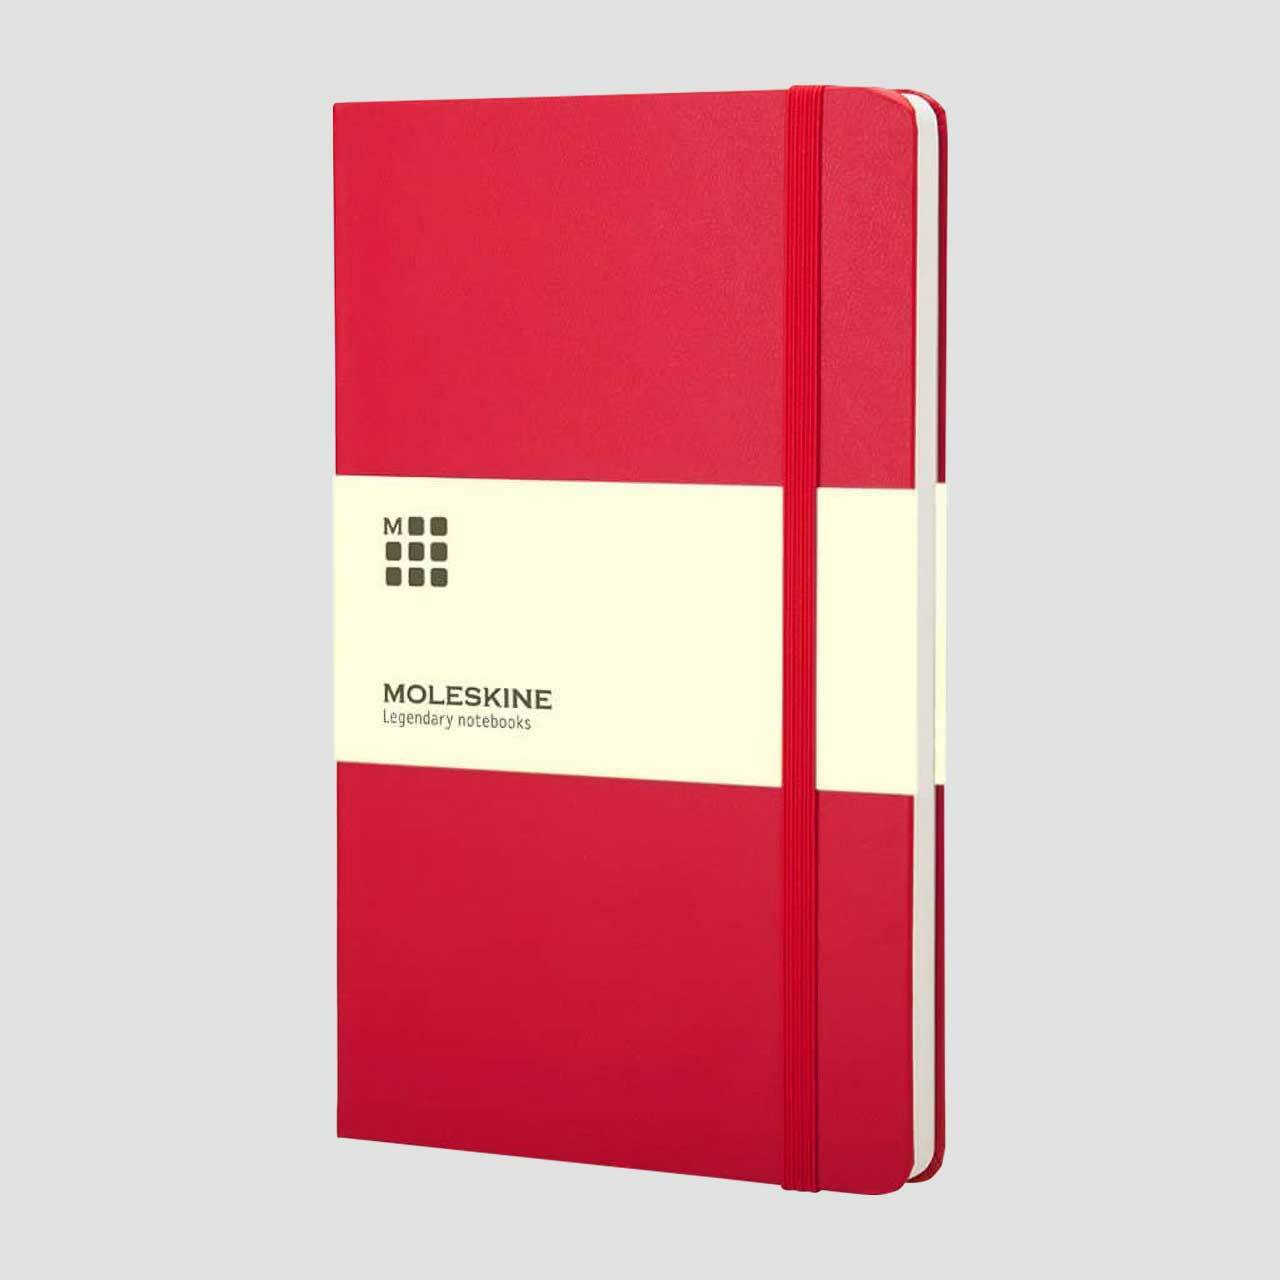 Moleskine notitieboek hard cover met banderol, rood